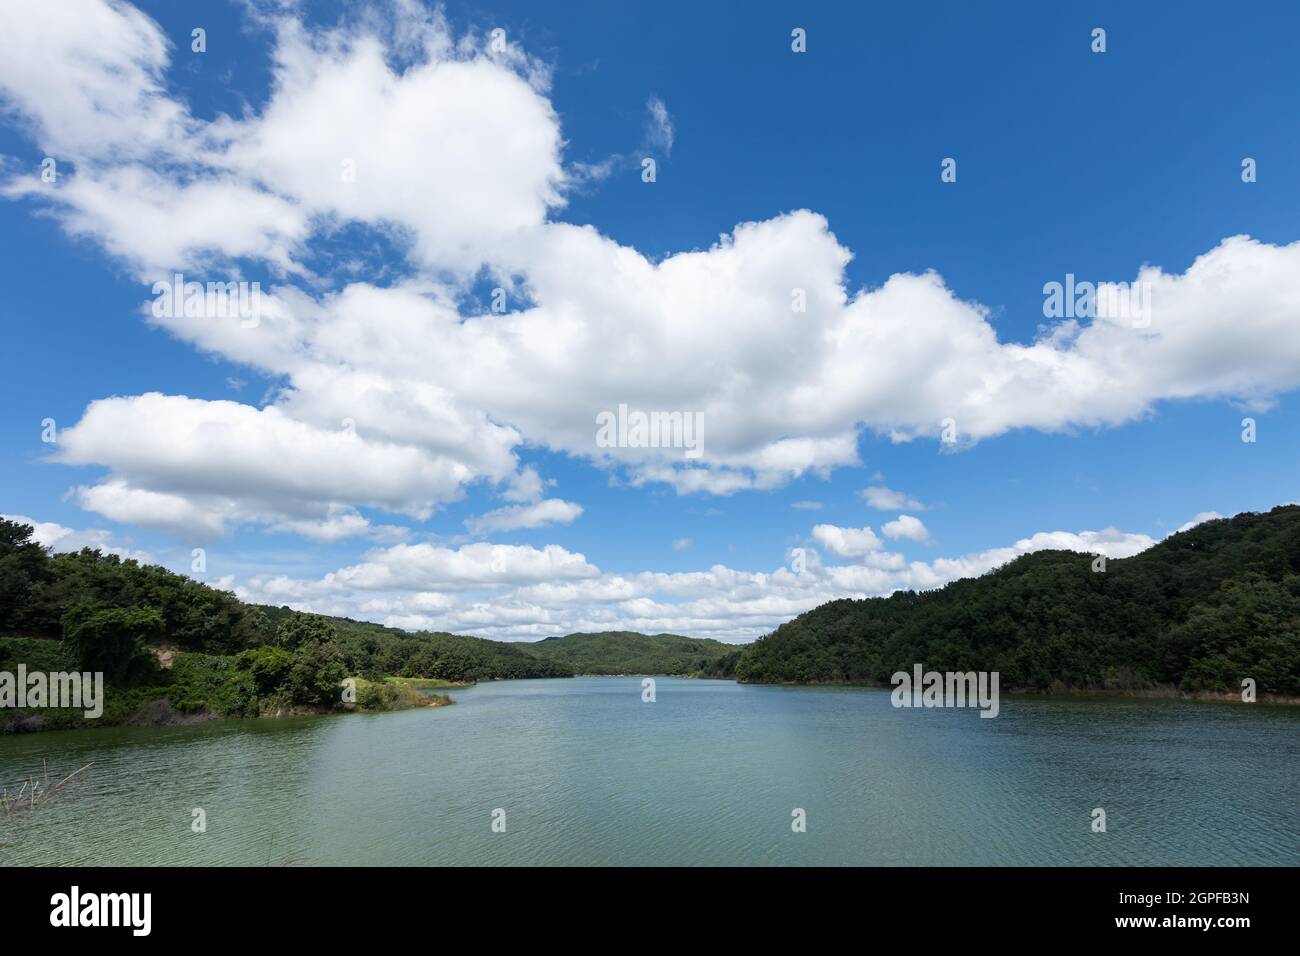 Paysage de beau ciel bleu avec des nuages blancs, réservoir de barrage d'Imdong, Corée Banque D'Images